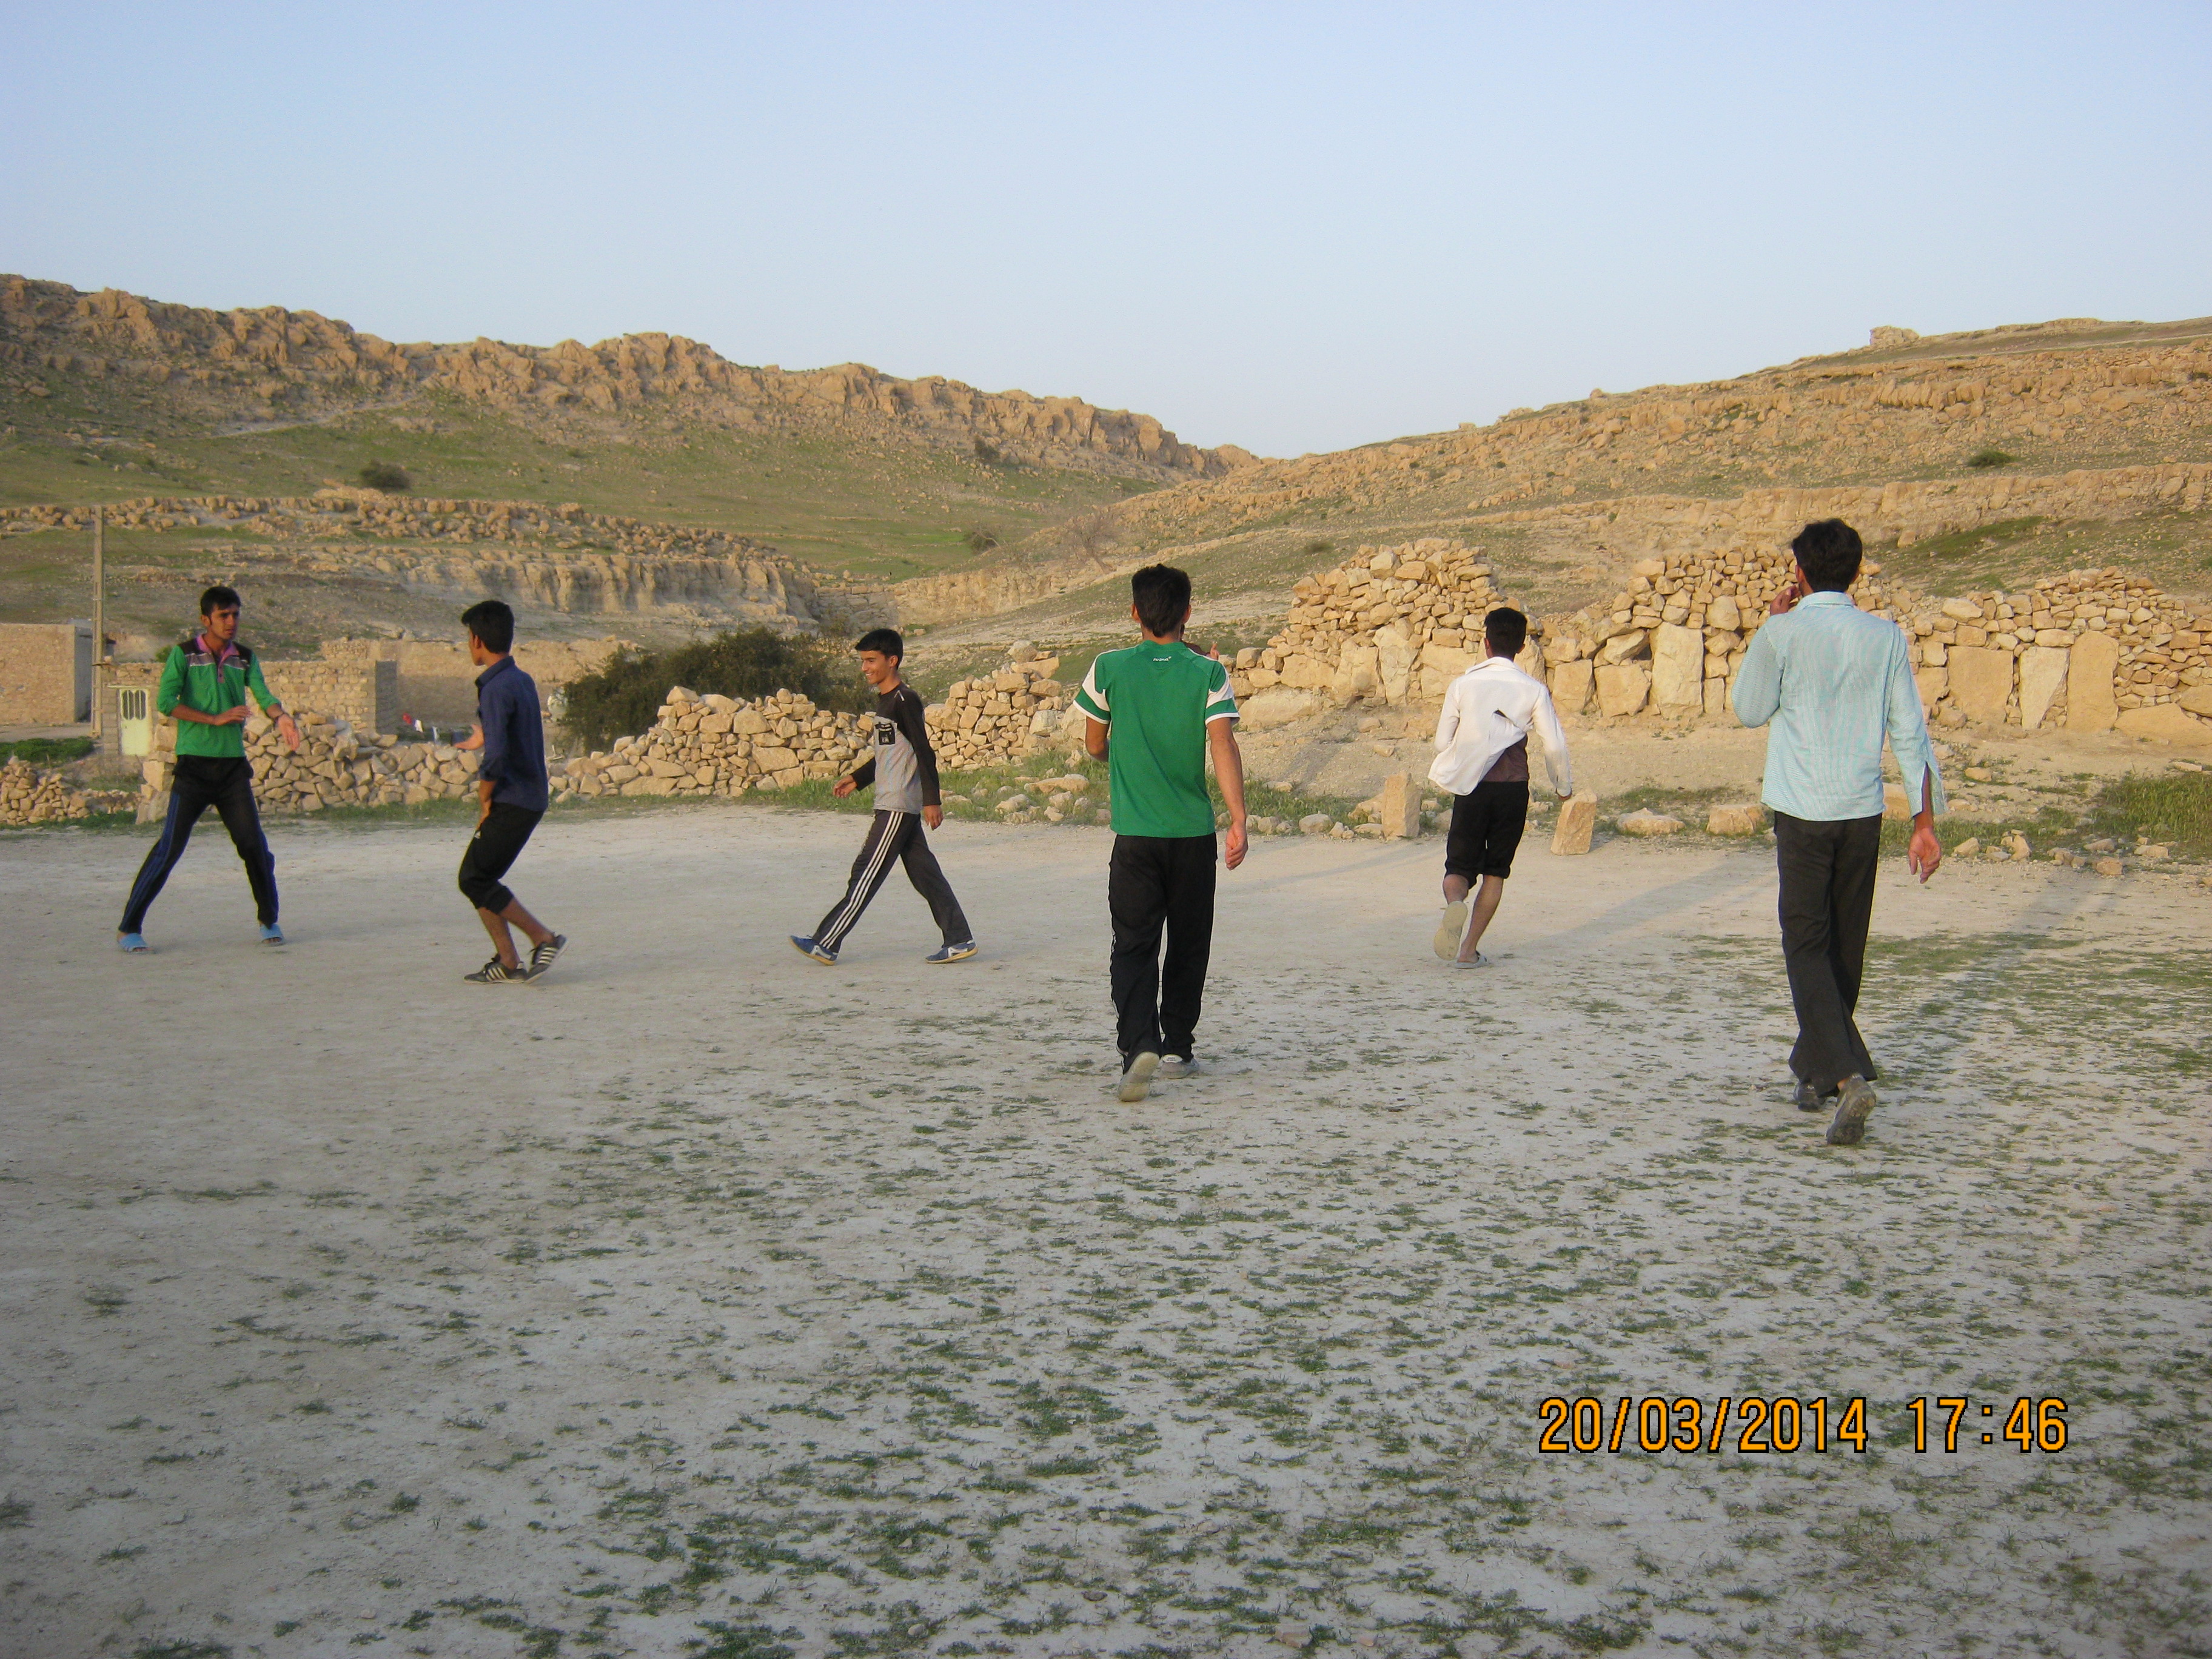 بچه های روستا در حال بازی فوتبال